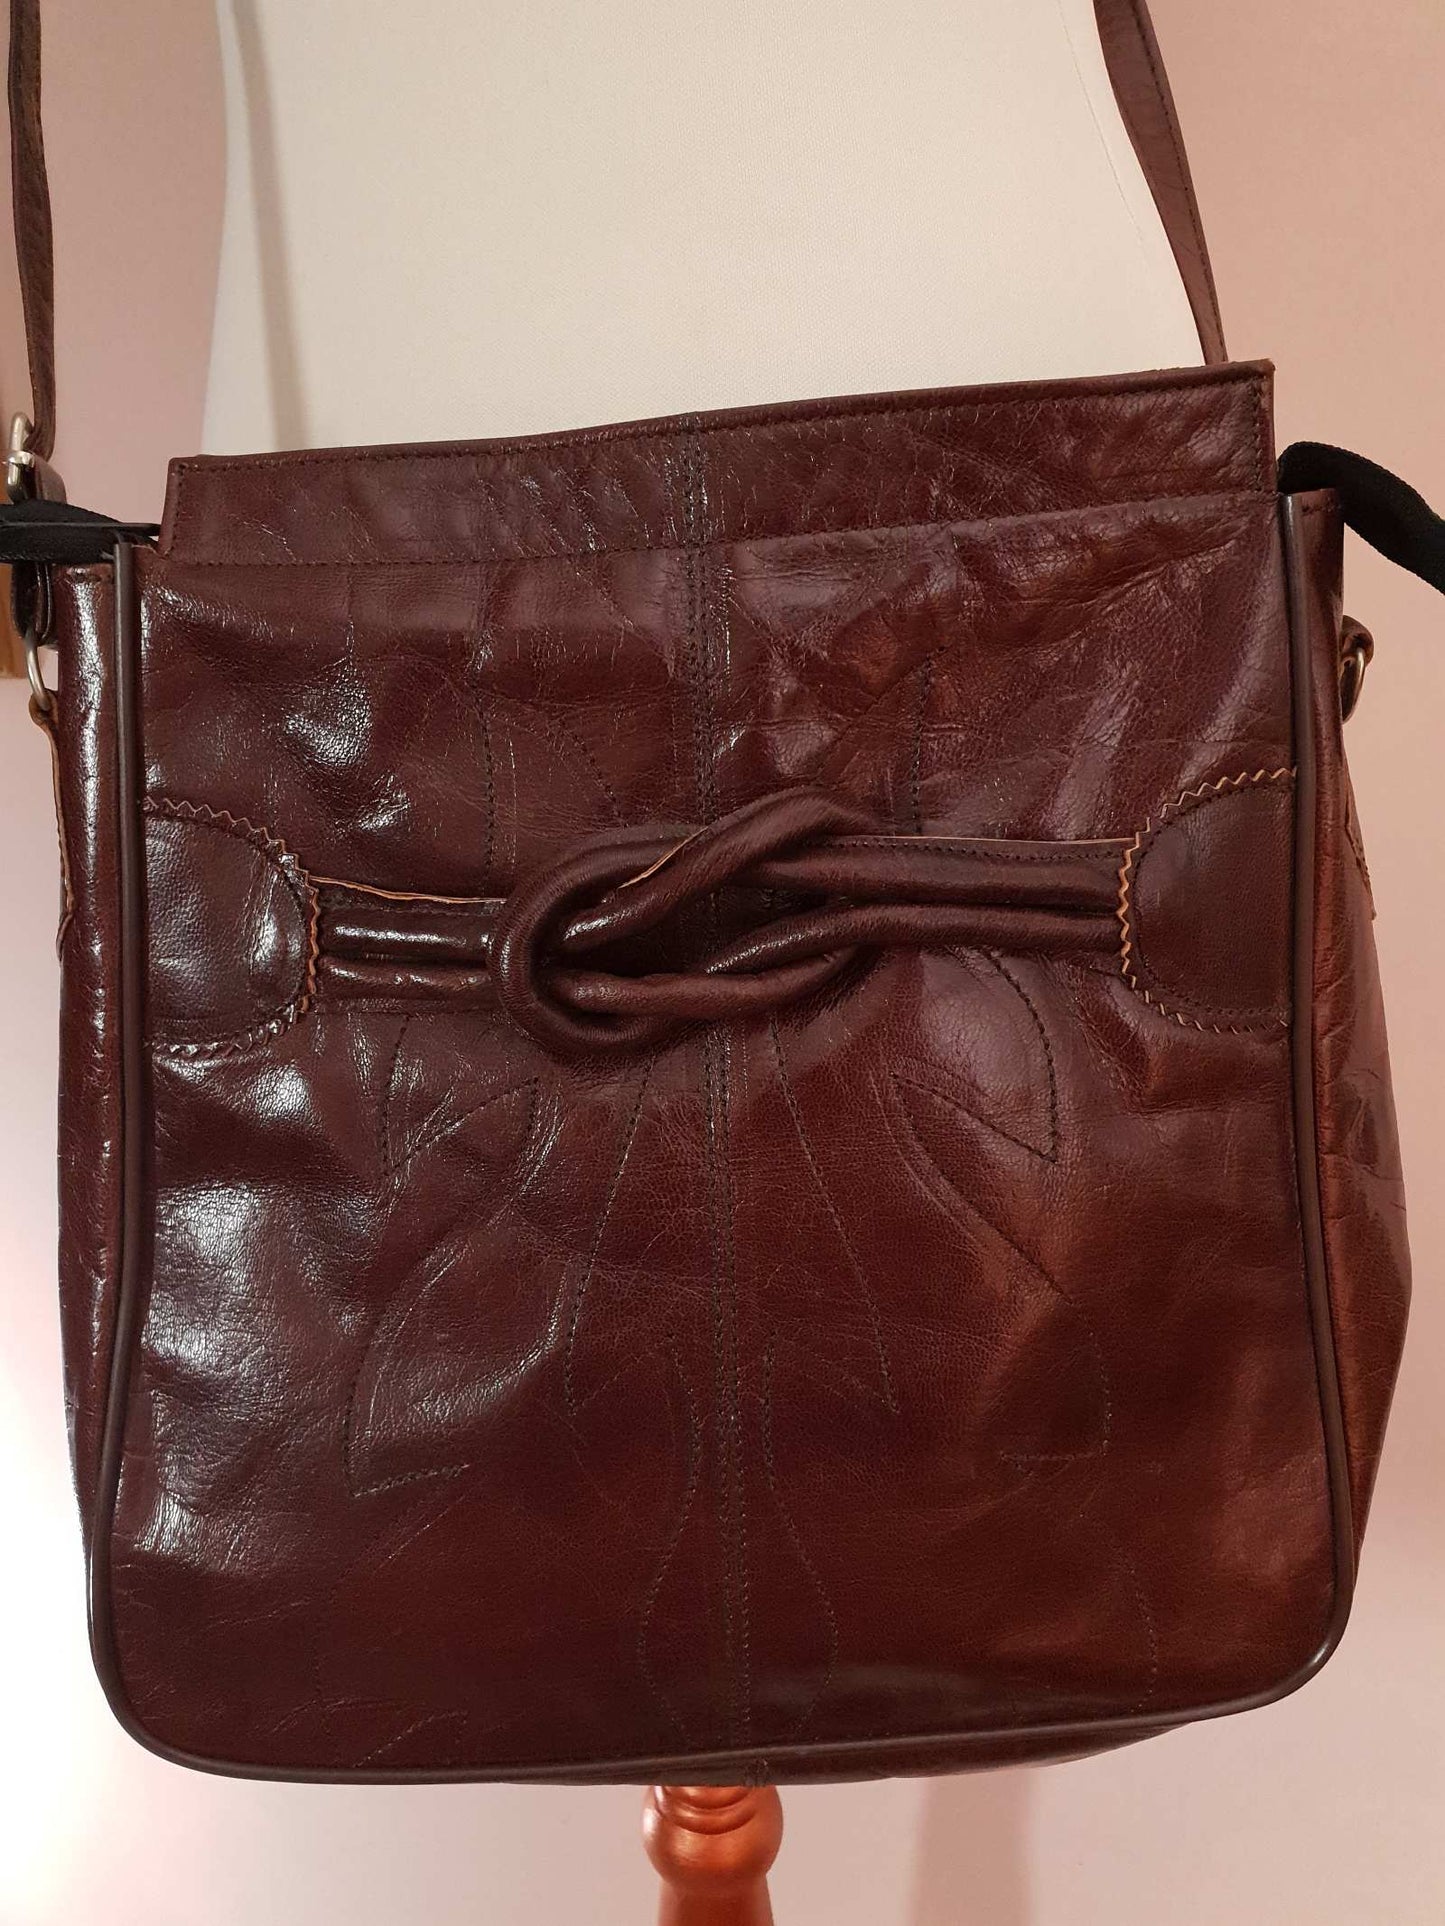 Vintage 1970s Brown Leather Shoulder Bag Adjustable Crossbody Retro Boho Handbag